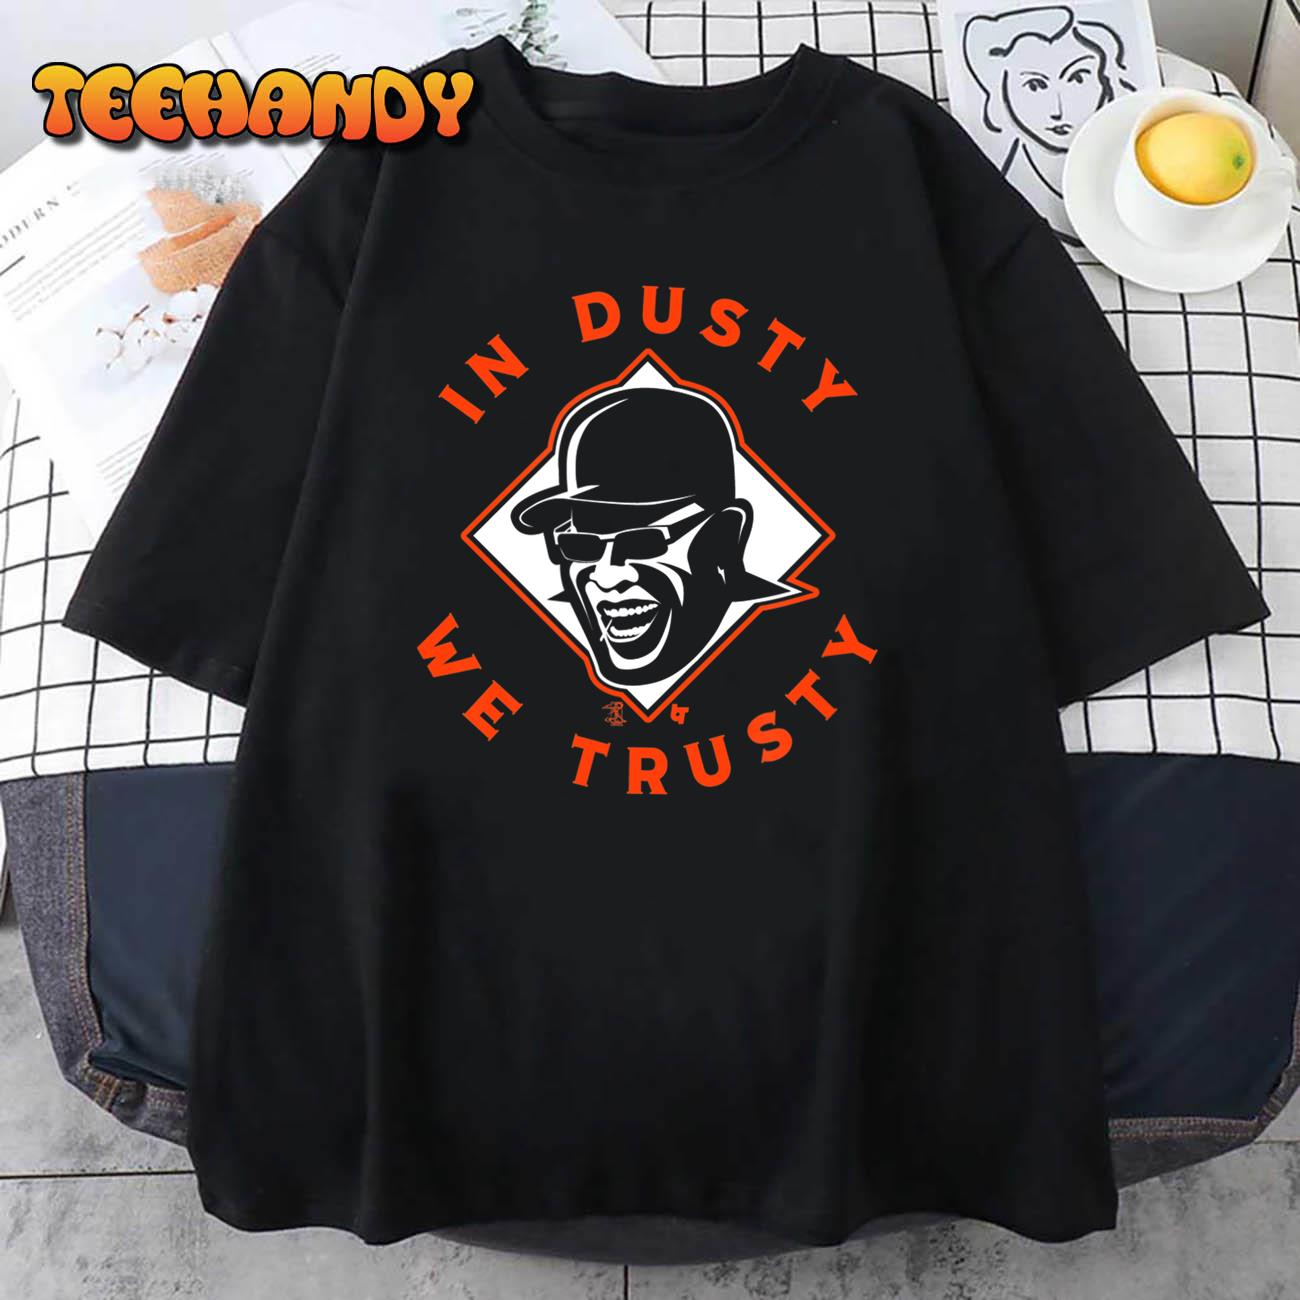 Dusty Baker Houston Astros in dusty we trusty T-shirt, hoodie